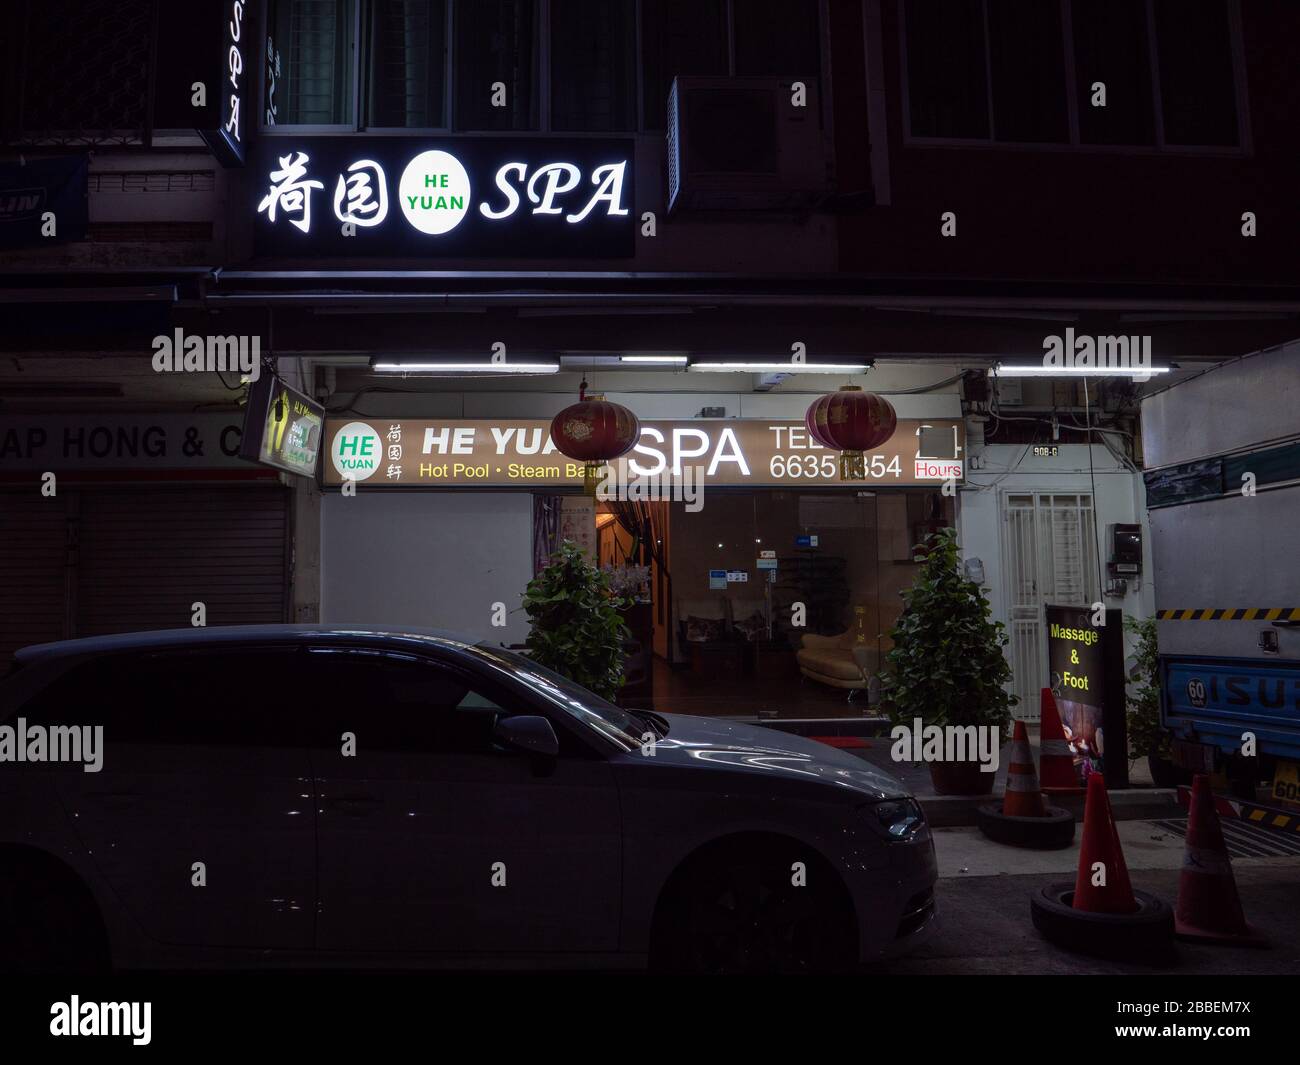 SINGAPUR - 25. FEBRUAR 2020 - Neon Beschilderung eines 24-Stunden-Massagebereichs/Massagesalon entlang der Upper Thompson Road. Die chinesischen Worte lauten "HE Yuan Spa". Stockfoto